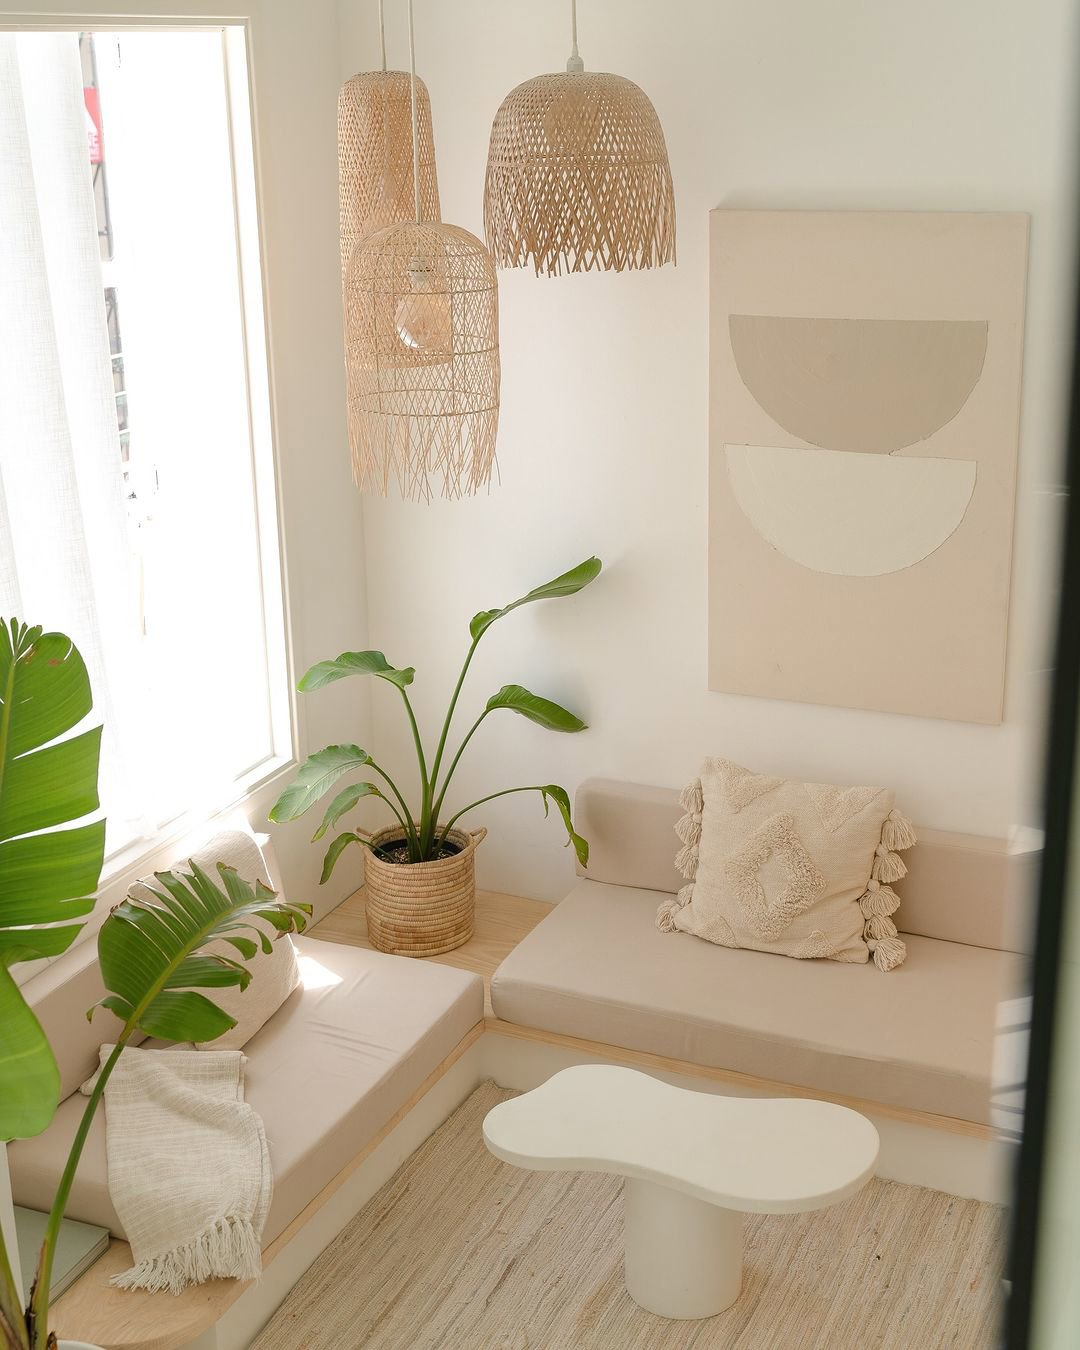 Luna Loft, el airbnb diseñado por Tangerine Studio.